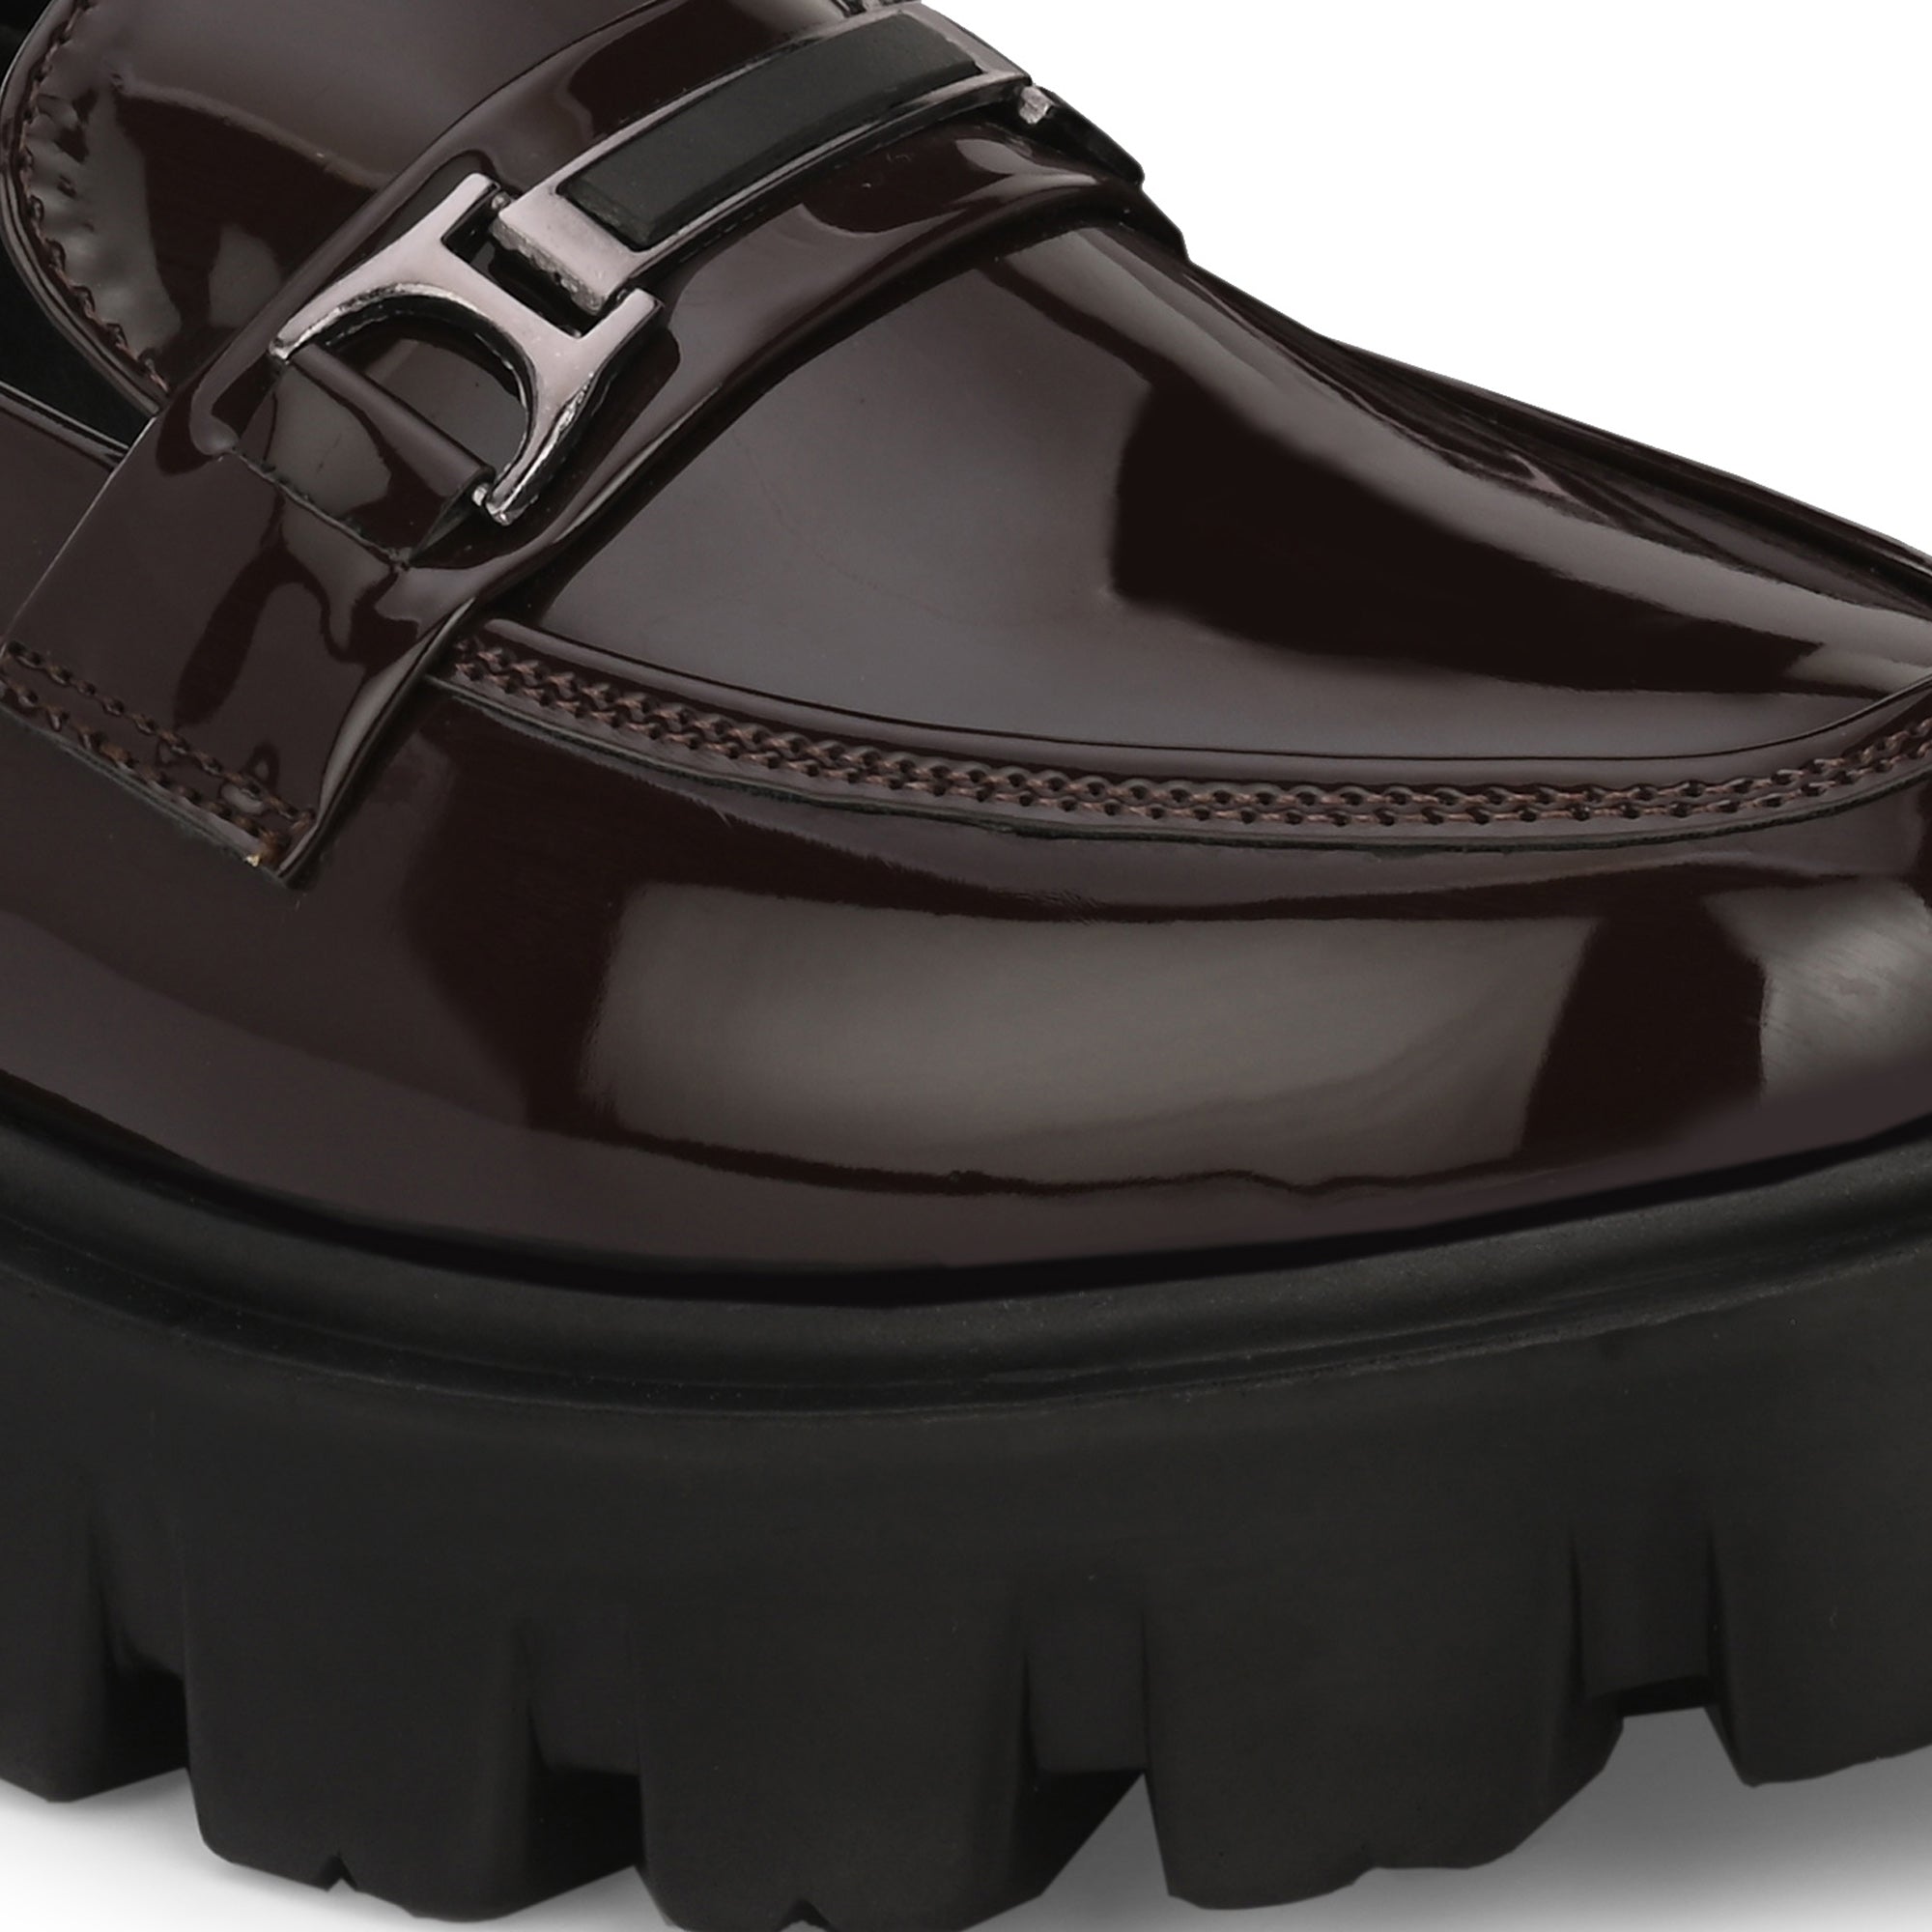 attitudist-brown-super-glossy-horsbit-slip-on-shoes-for-men